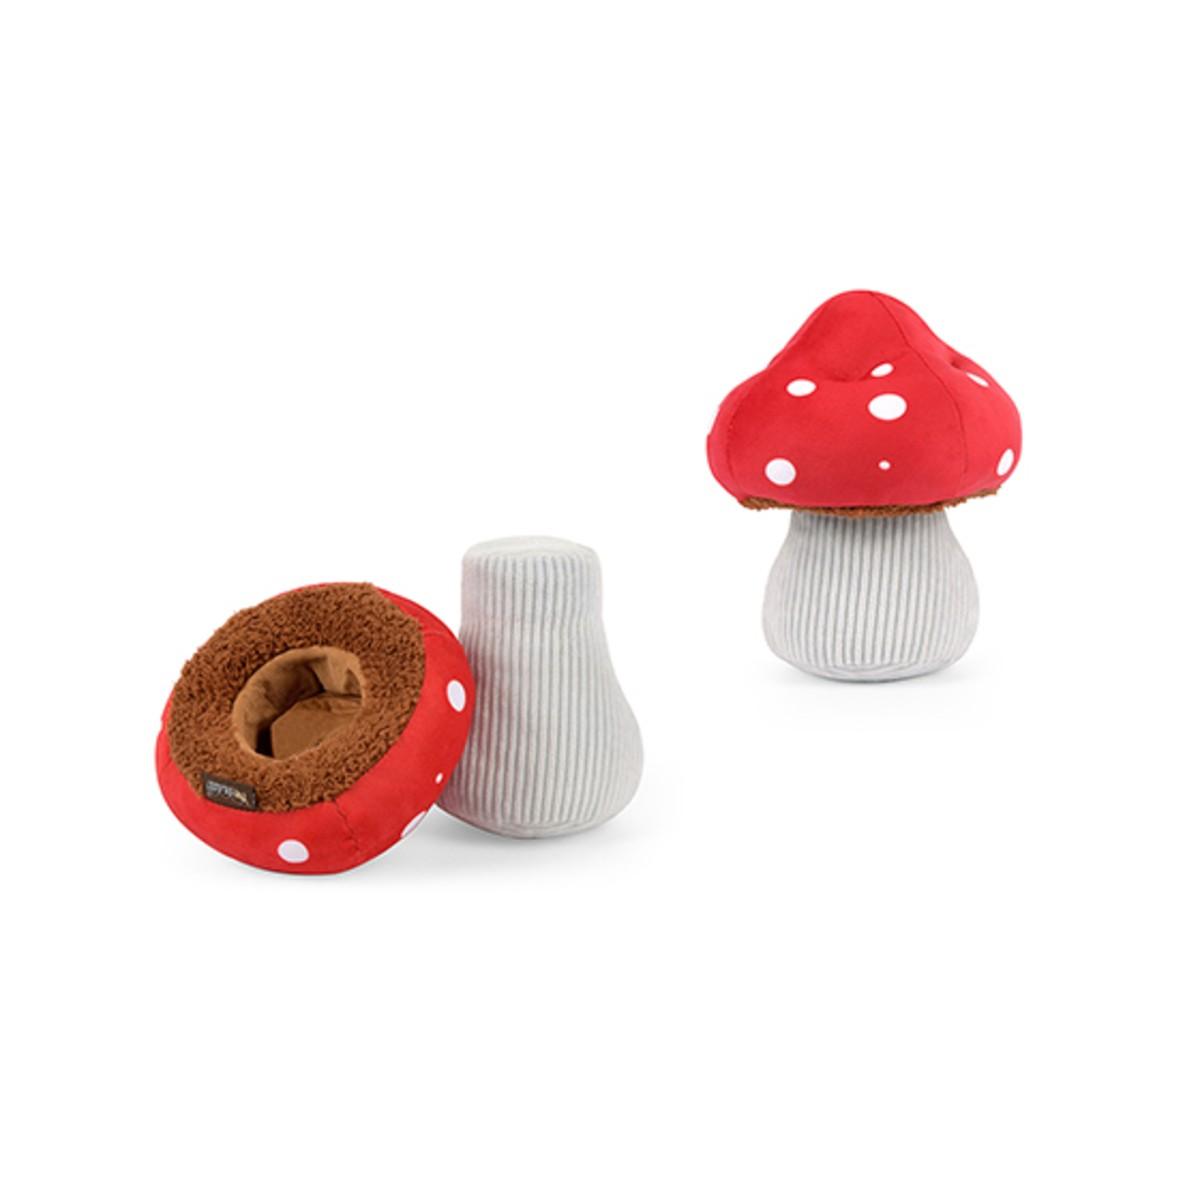 P.L.A.Y. Blooming Buddies Dog Toy - Mutt's Mushroom